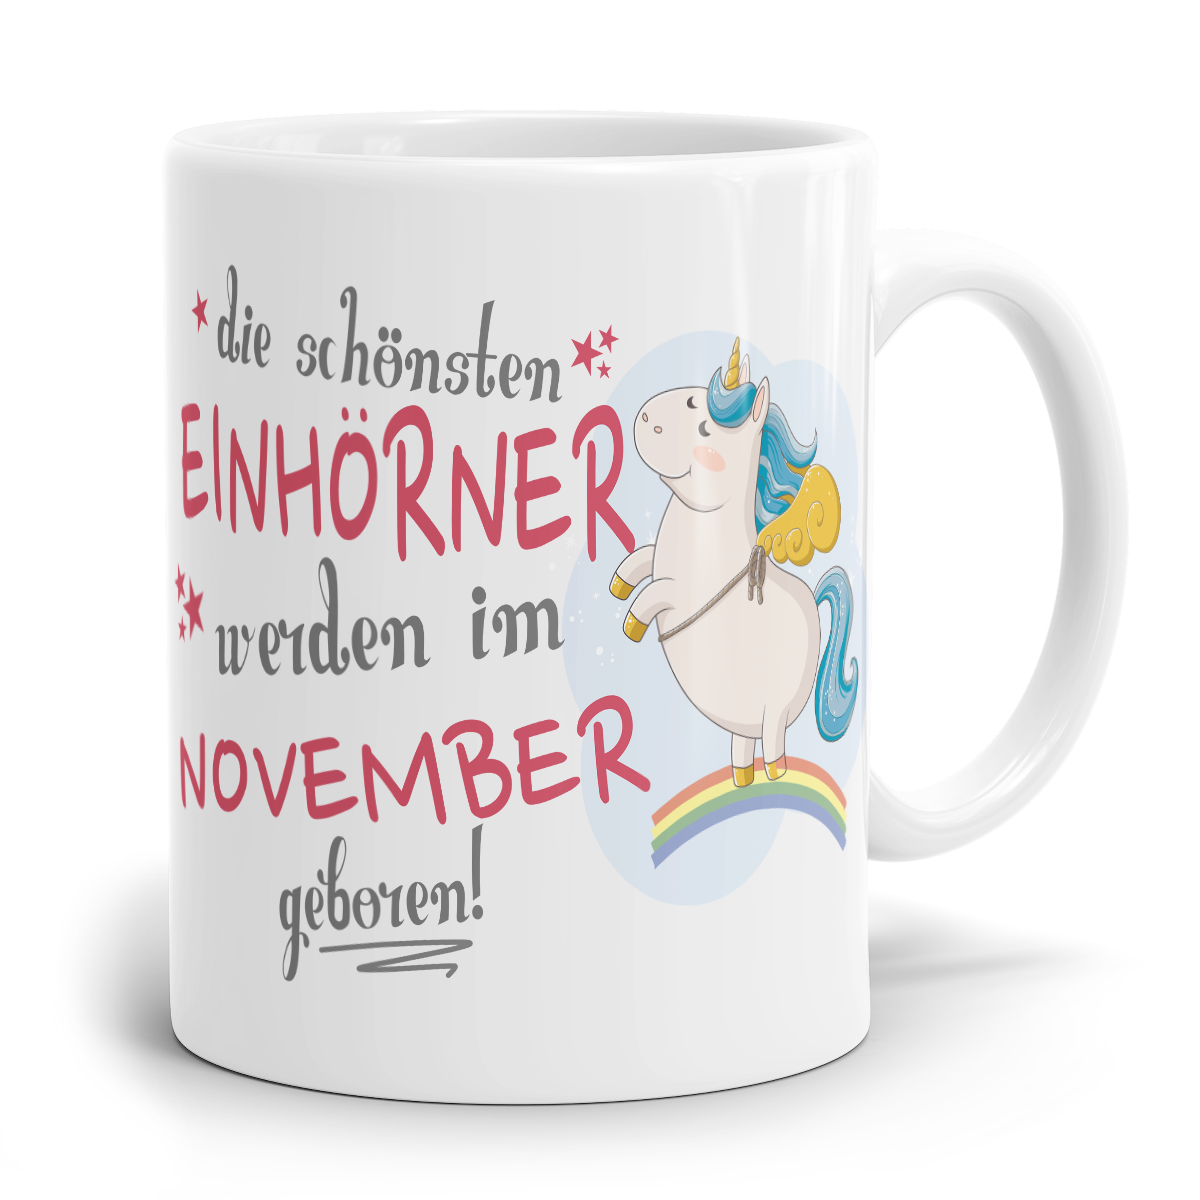 Einhorn Tasse "Schönsten Einhörner - November"